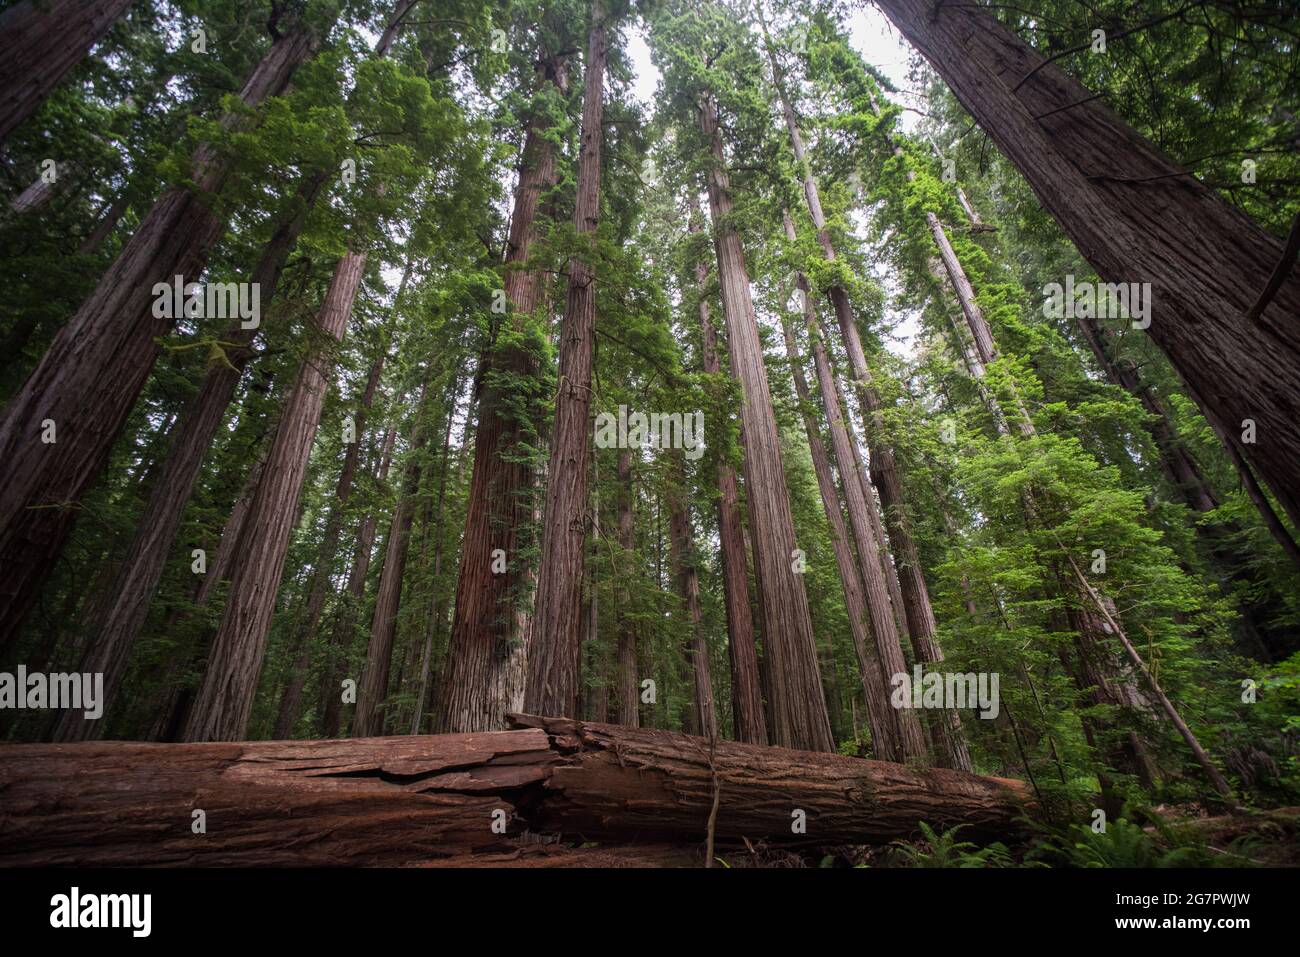 Forêt de séquoias (Sequoia sempervirens) en voie de disparition dans le parc national Jedediah Smith Redwoods, dans le nord de la Californie, aux États-Unis. Banque D'Images